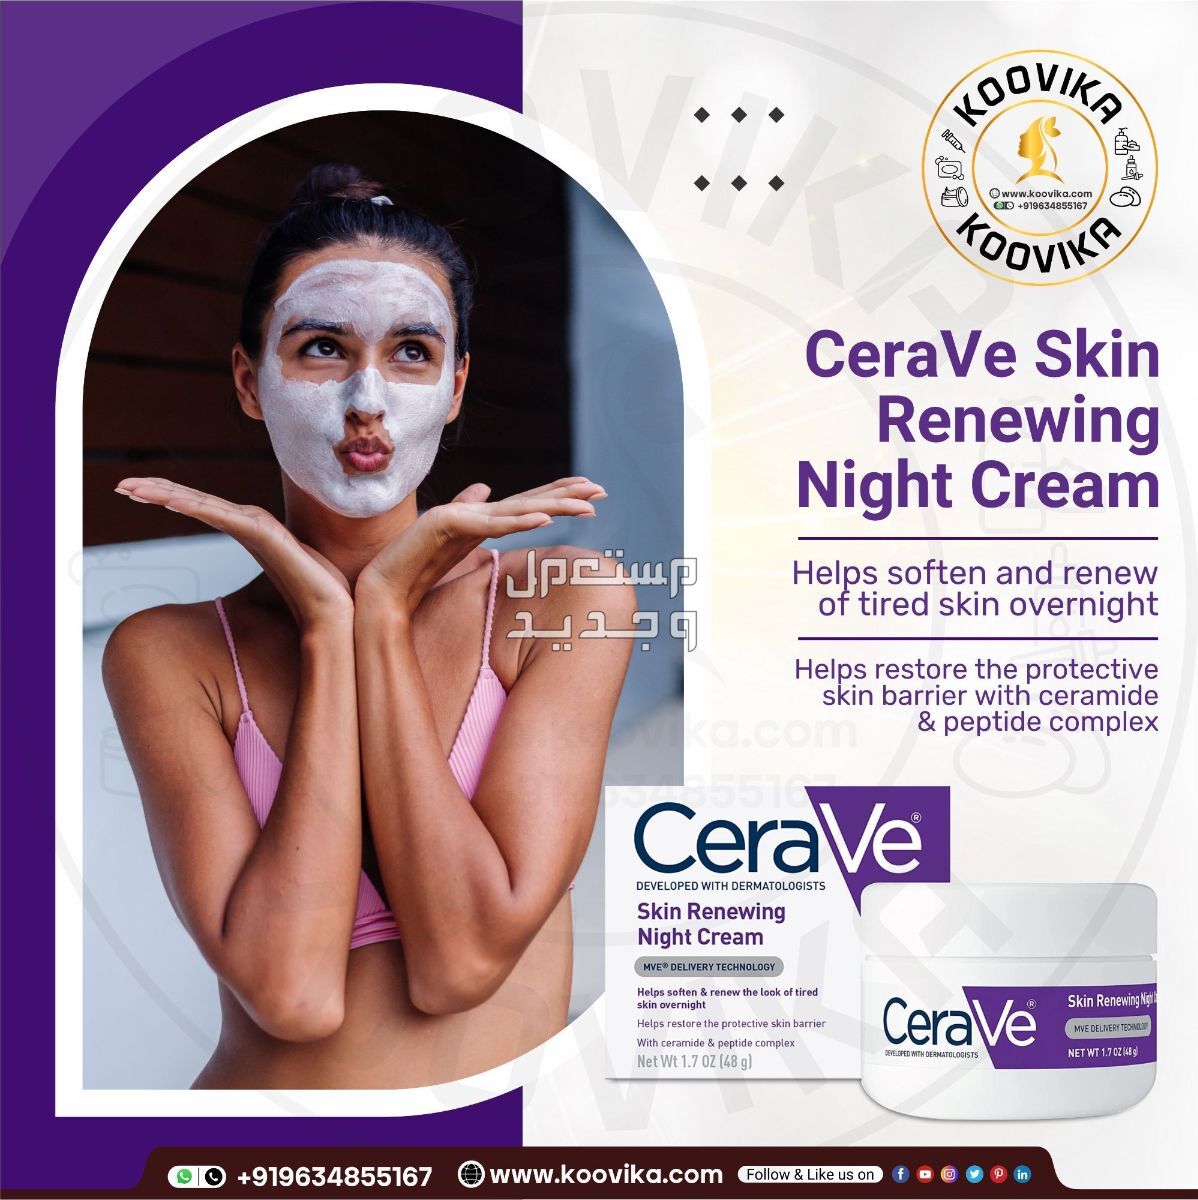 أفضل كريم ليلي للعناية بالبشرة لعام 2023 في المغرب شكل كريم ليلي من CeraVe Skin Renewing Night Cream على البشرة